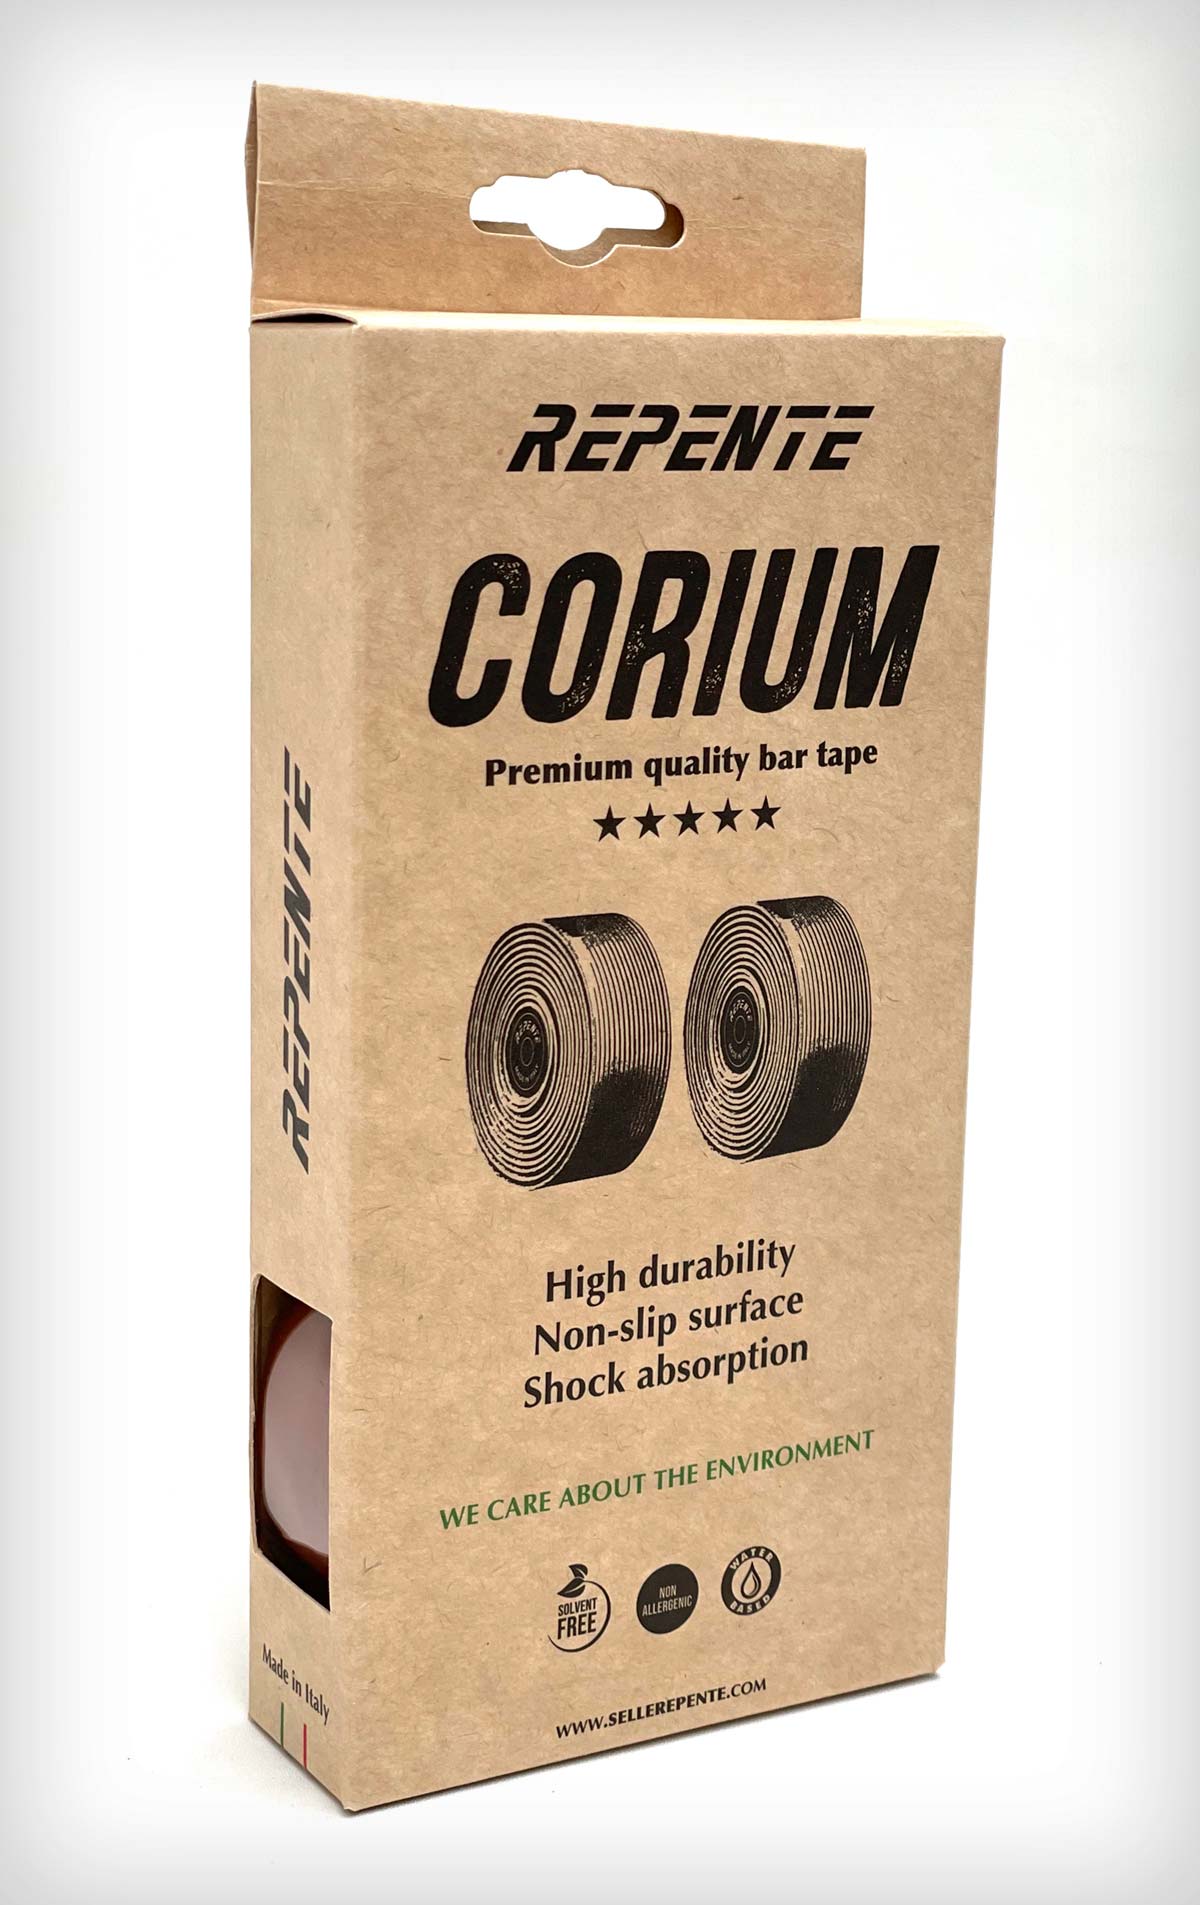 En TodoMountainBike: Repente Corium, una cinta de manillar dirigida a los puristas del ciclismo